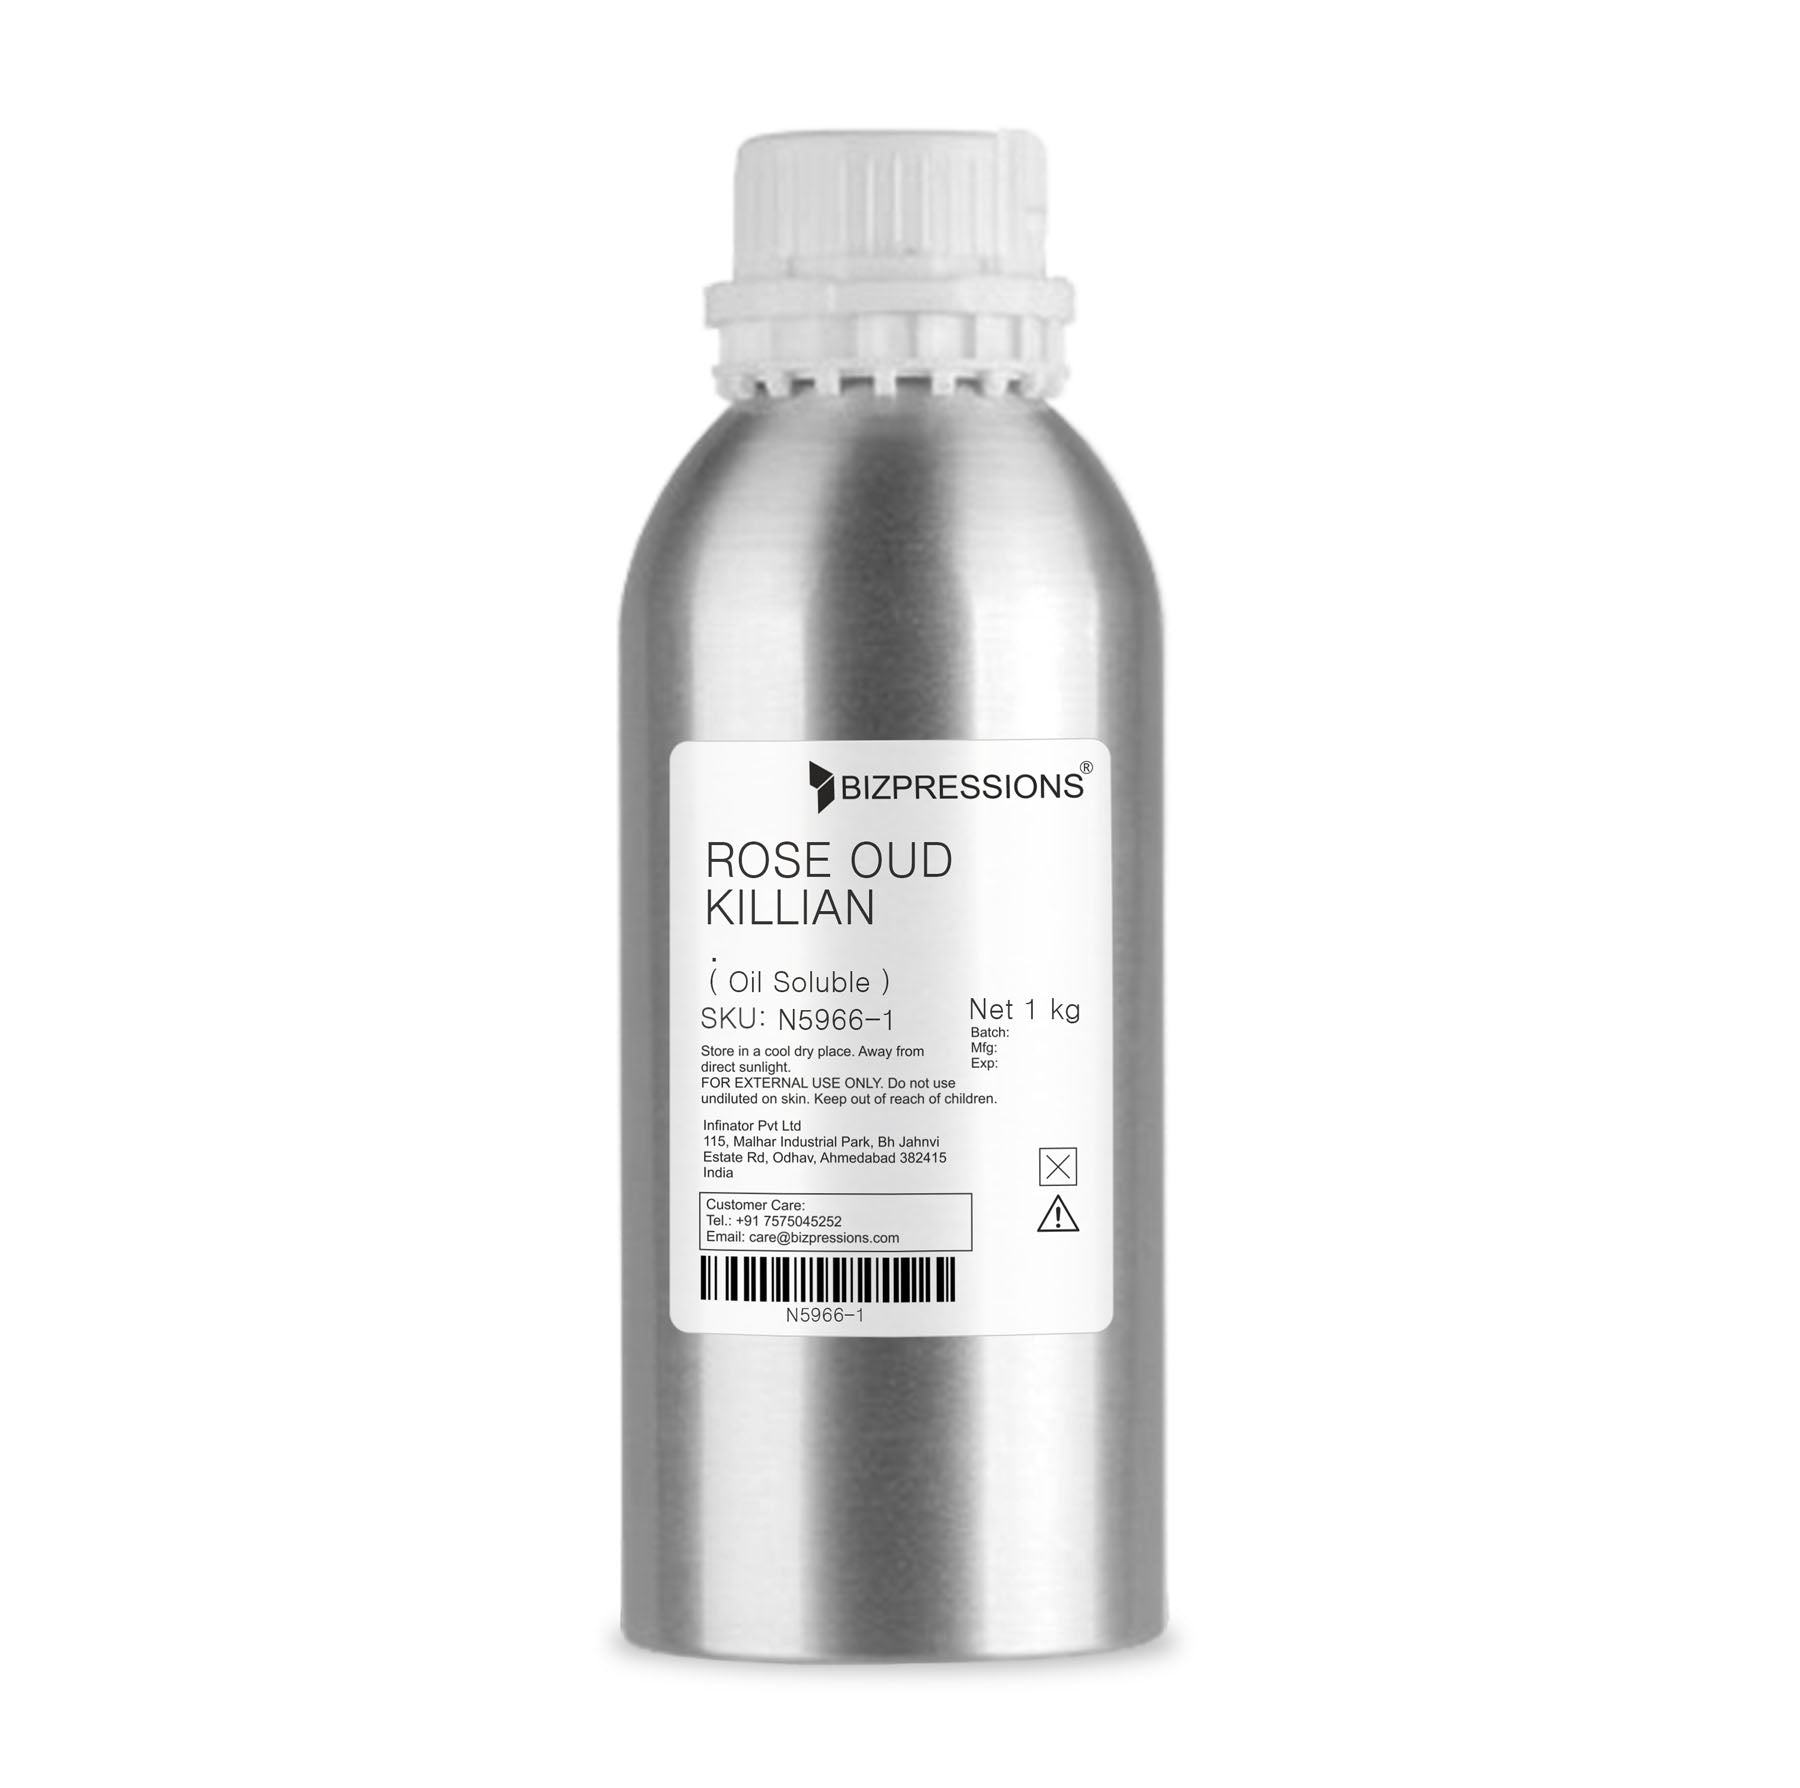 ROSE OUD KILLIAN - Fragrance ( Oil Soluble ) - 1 kg